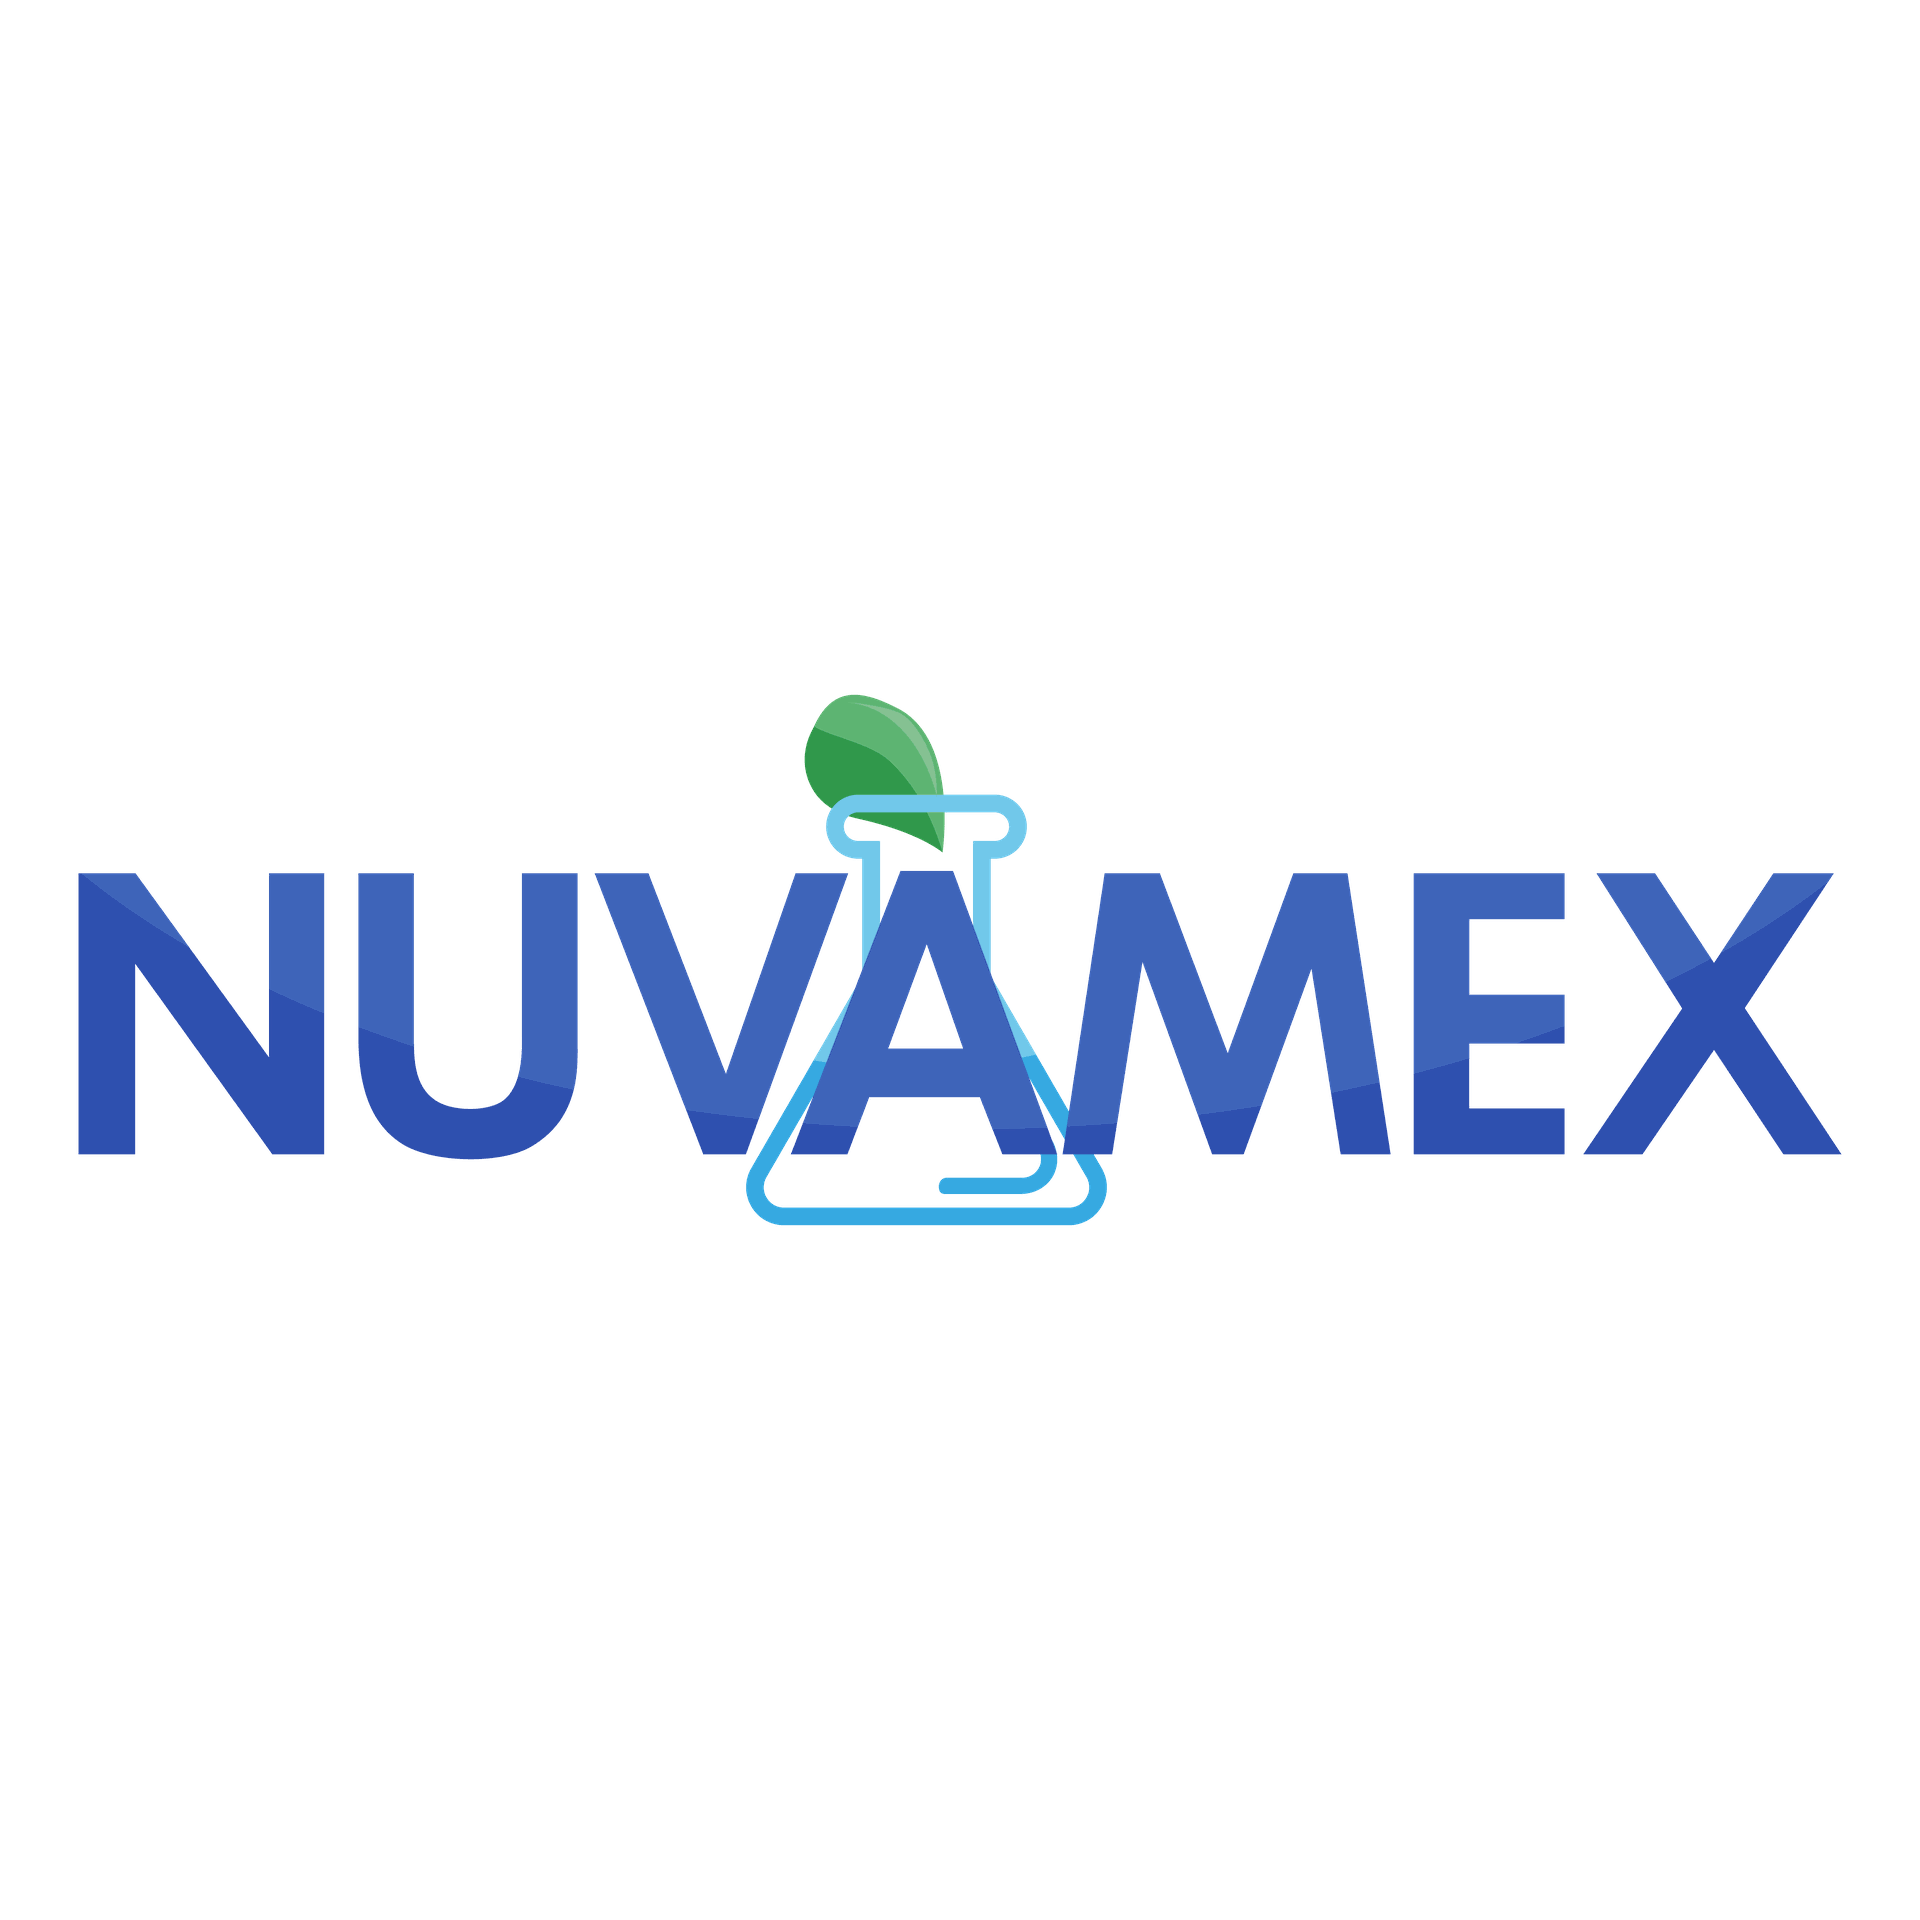 Nuvamex